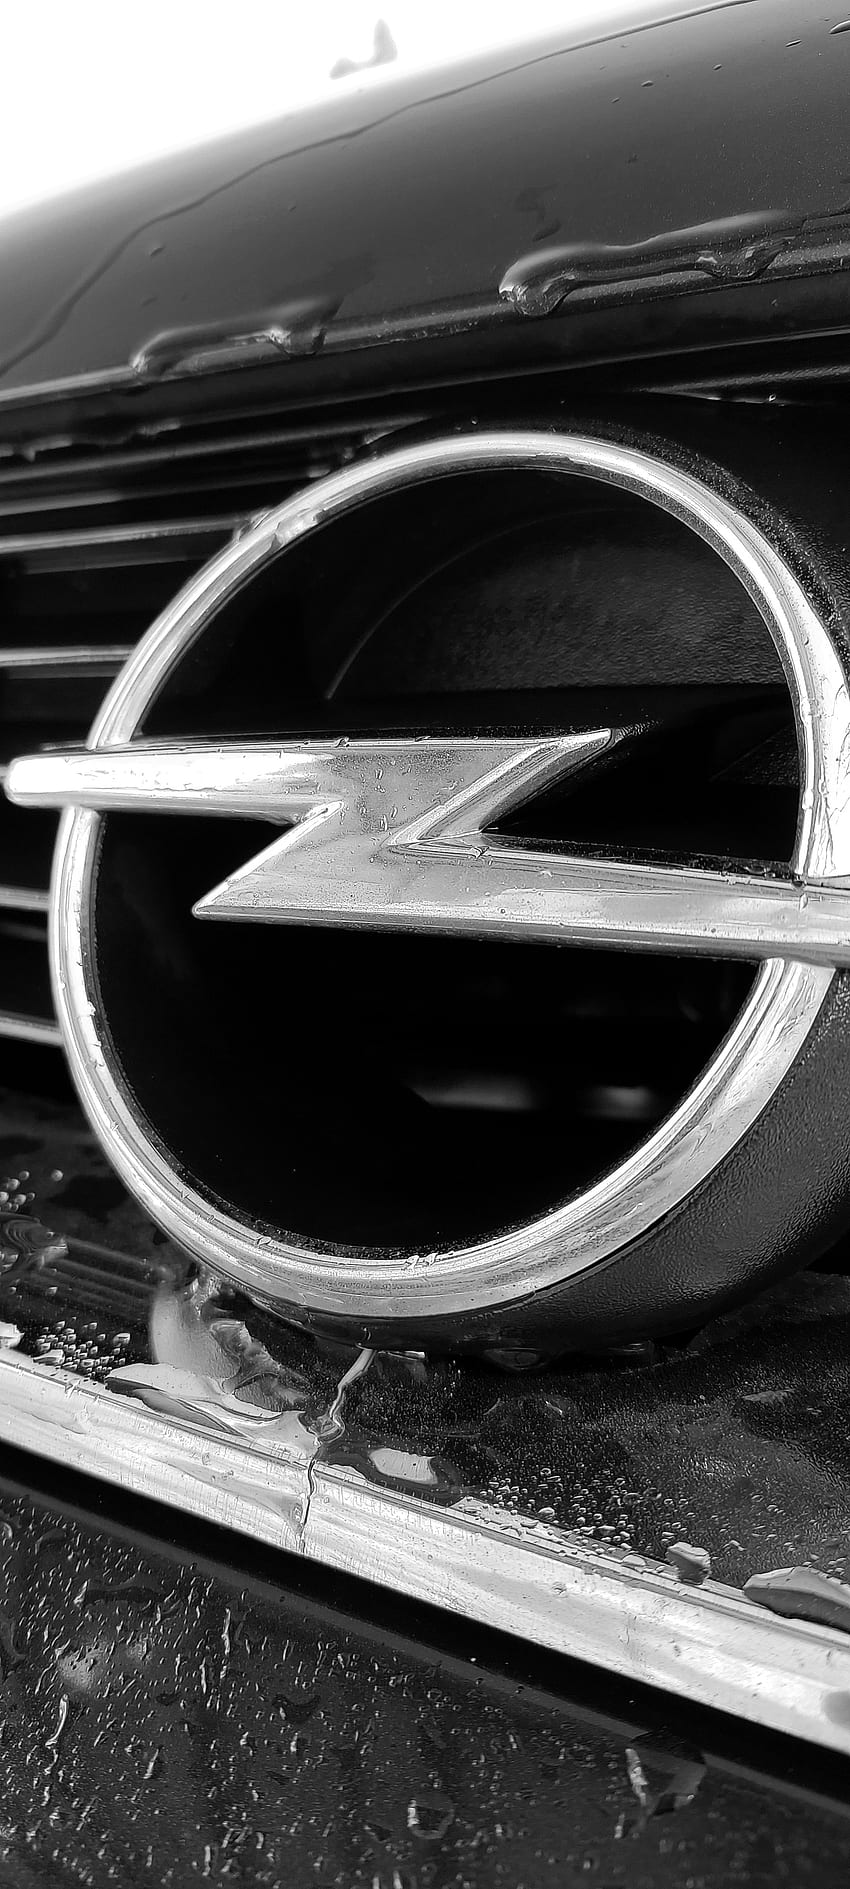 Opel Vectra, Lambang, Zafira, corsa, Astra wallpaper ponsel HD